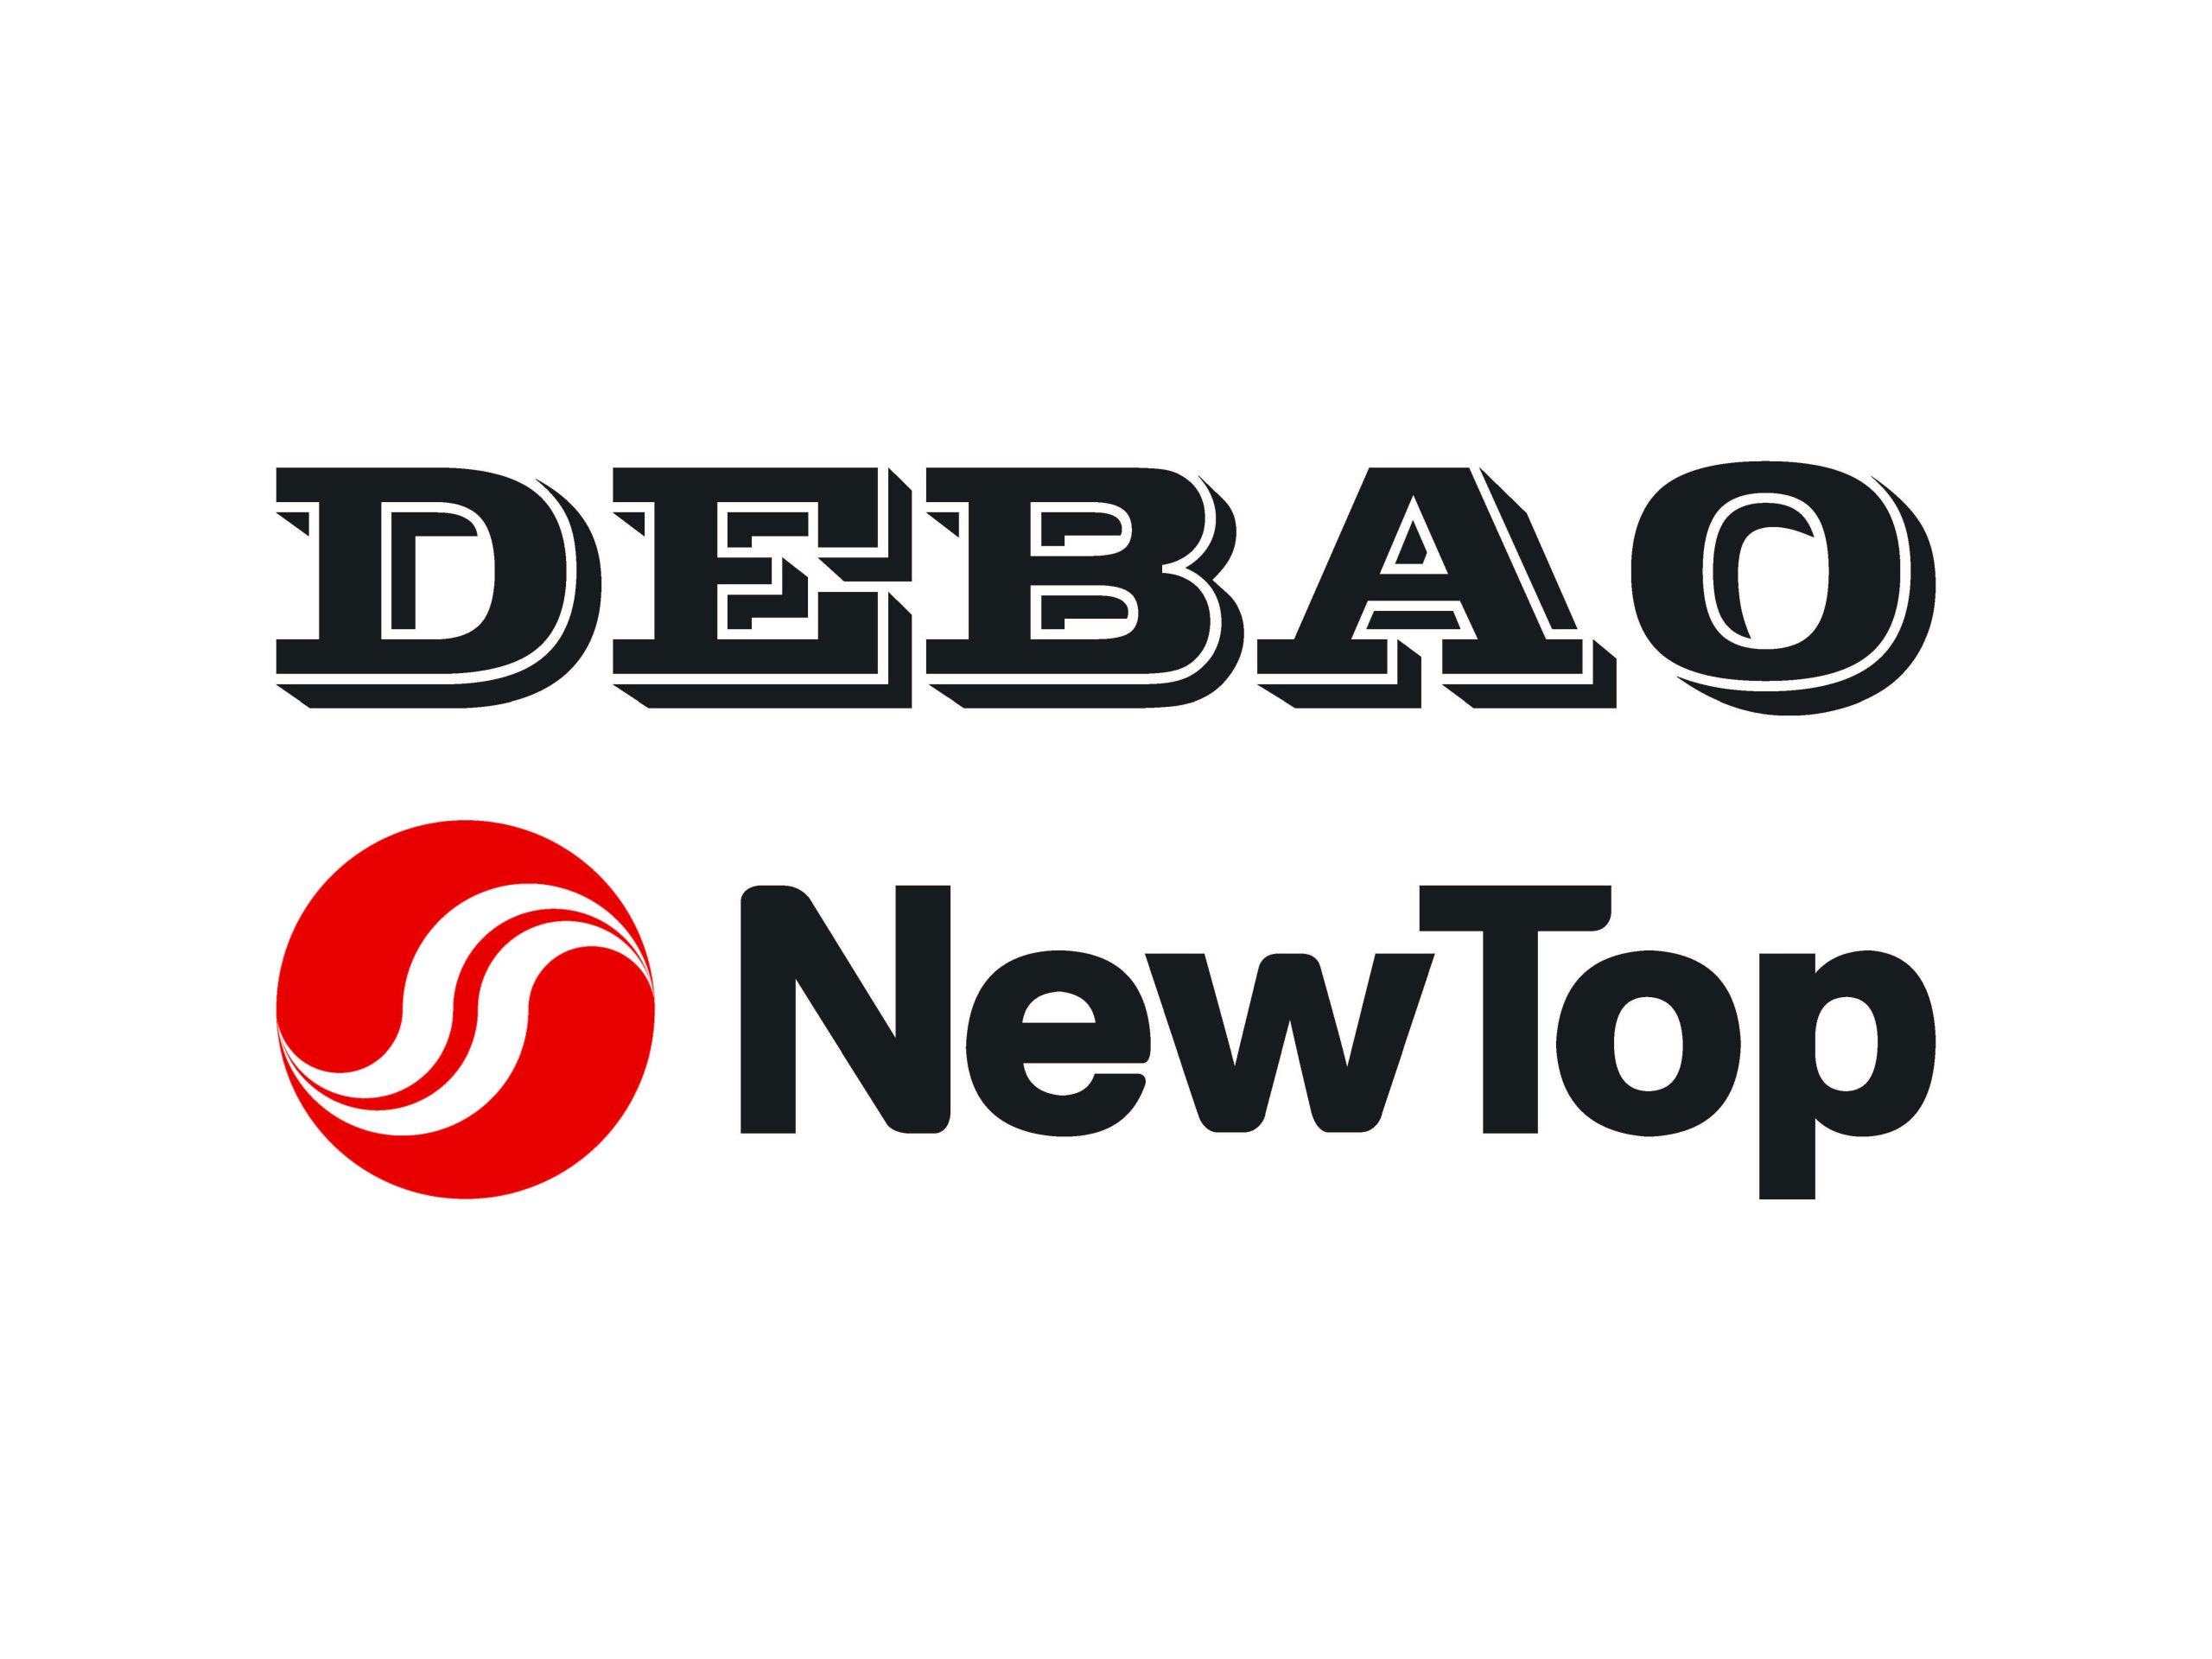 DEBAO & NewTop